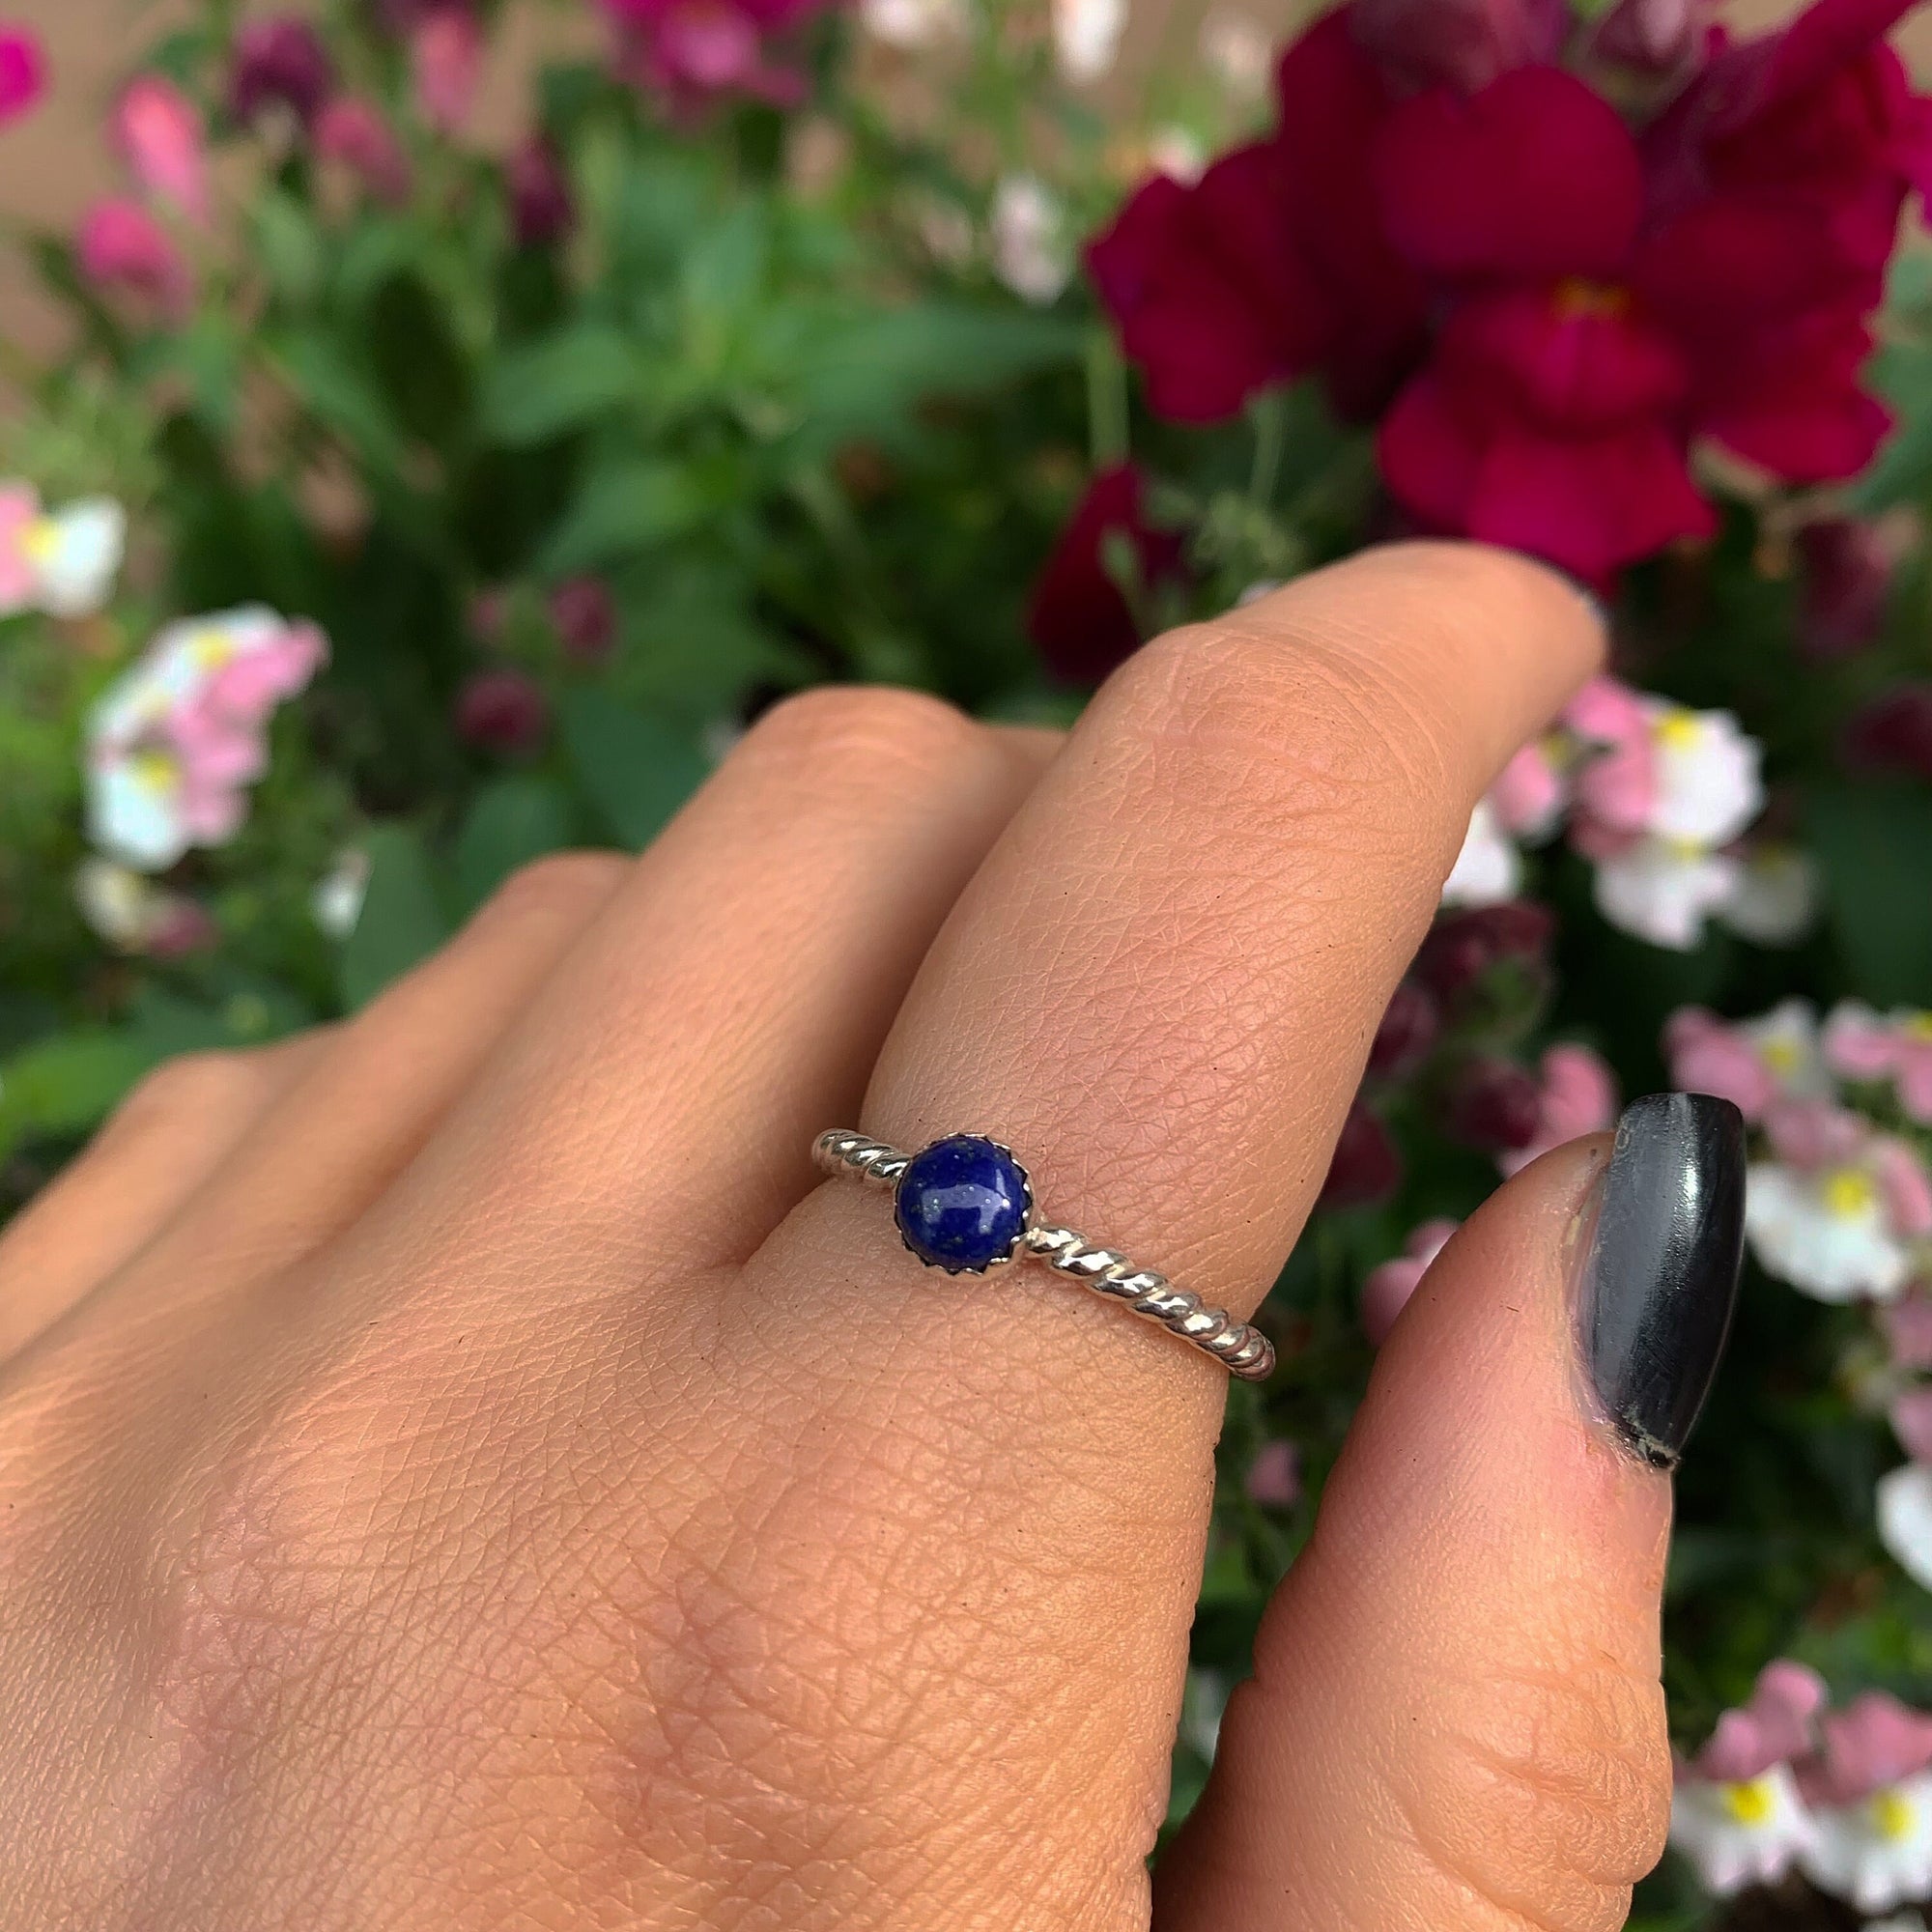 Lapis Lazuli Twist Ring - Made to Order 